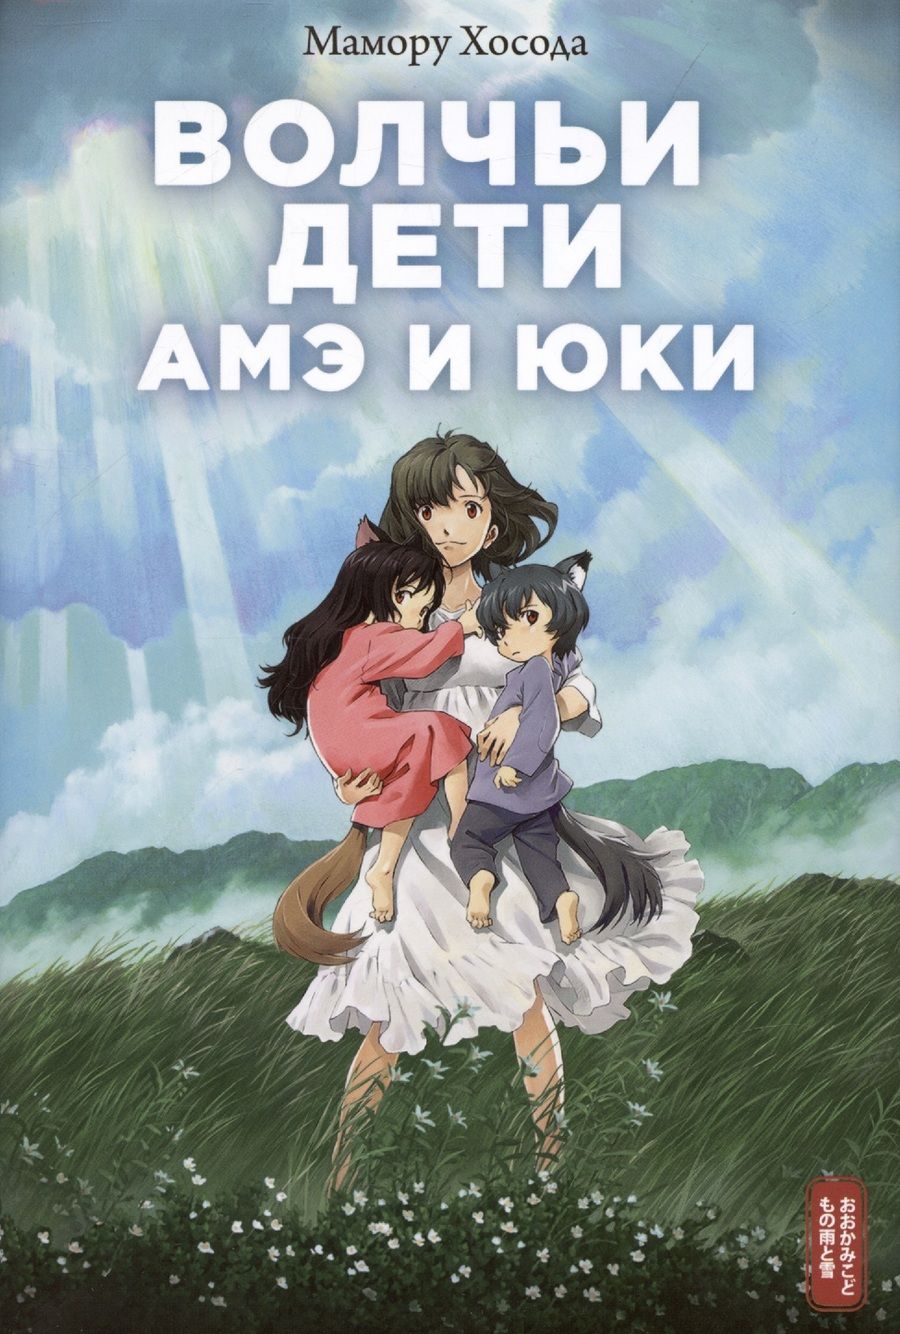 Обложка книги "Хосода: Волчьи дети Амэ и Юки"